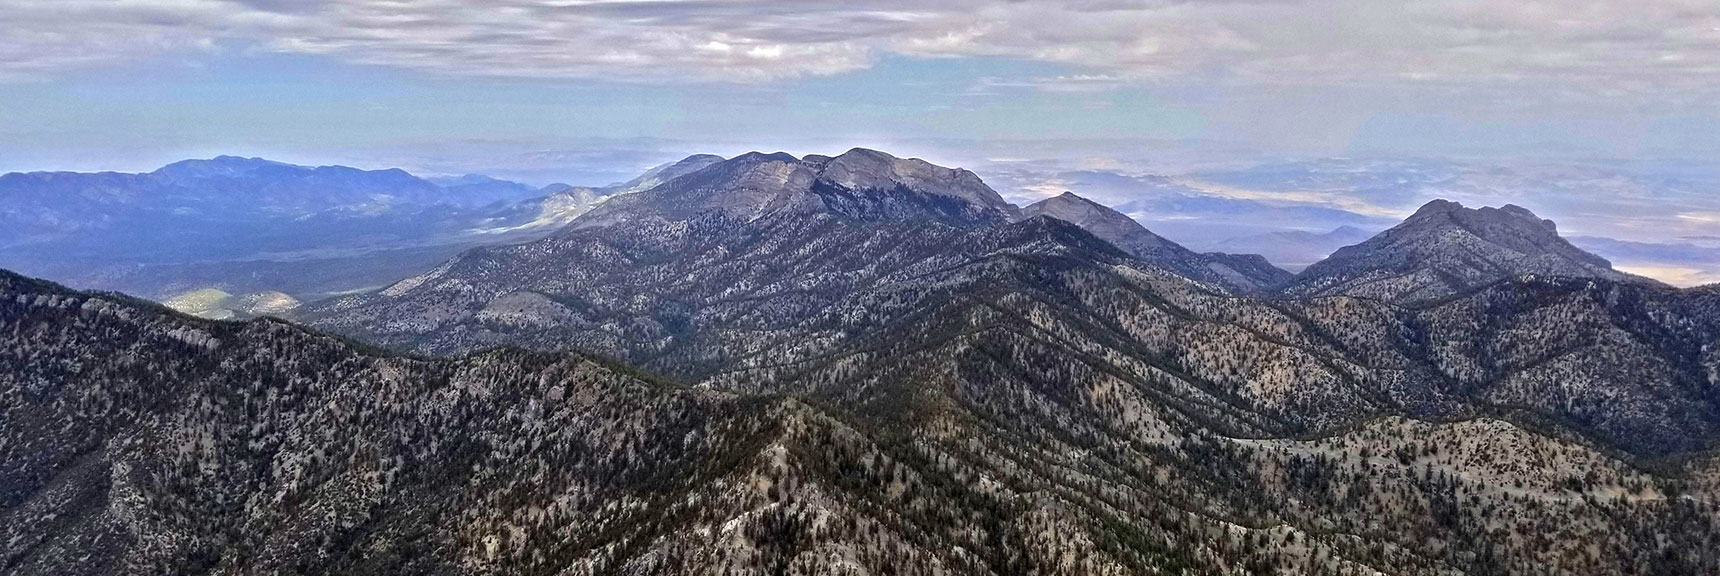 McFarland Peak, Macks Peak and the Bonanza Trail Ridgeline from Lee Peak Summit | Lee and Charleston Peaks via Lee Canyon Mid Ridge | Mt Charleston Wilderness | Spring Mountains, Nevada